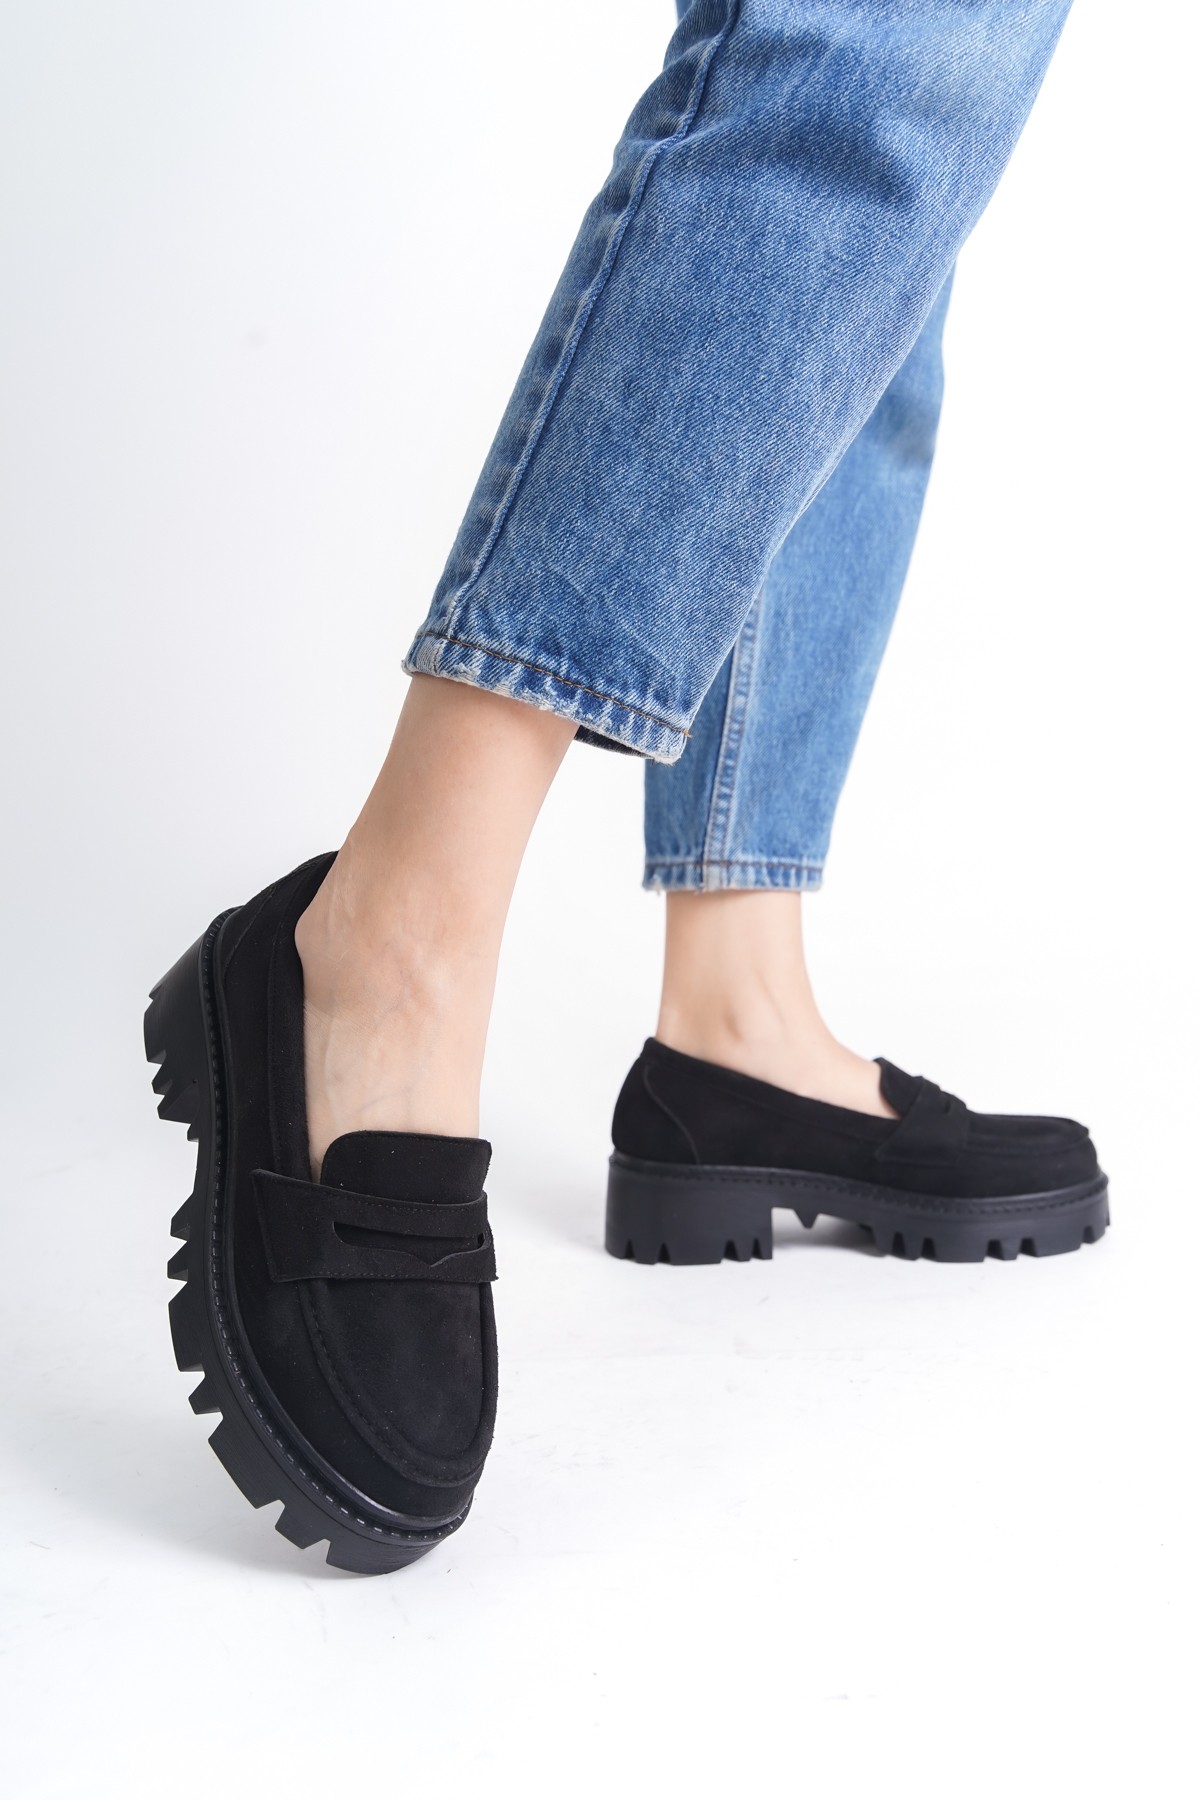 Peniscola Kadın Kalın Tırtıklı Tabanlı Fiyonk Detaylı Loafer / Oxford Ayakkabı